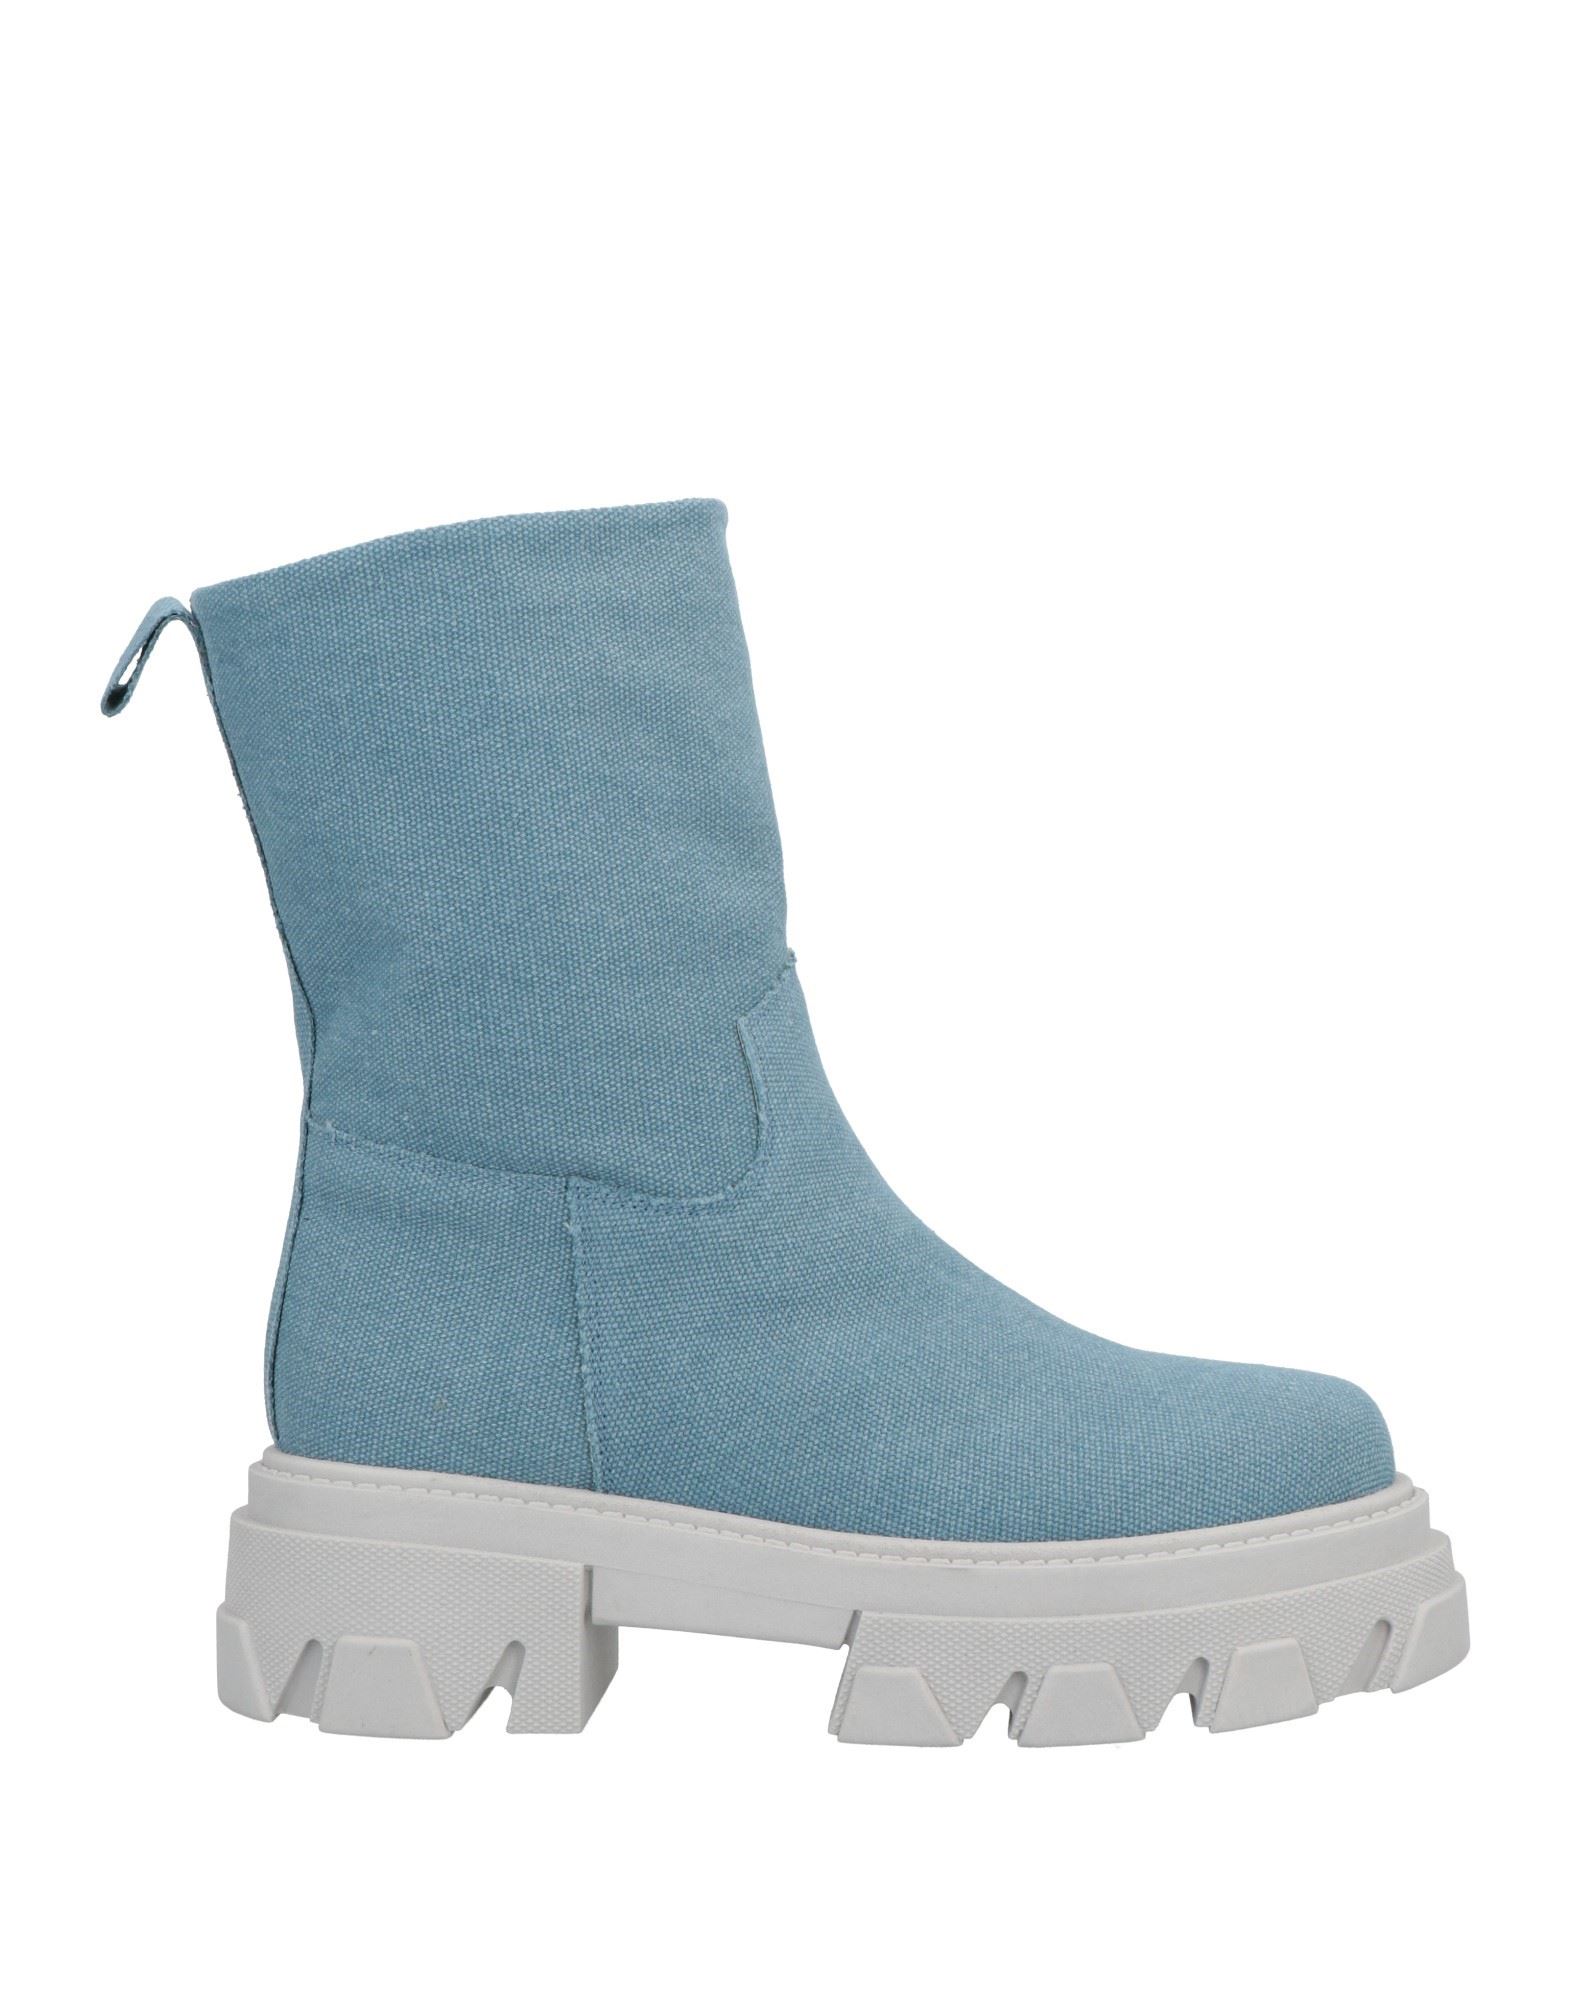 Shop Unlace Woman Ankle Boots Sky Blue Size 8 Textile Fibers